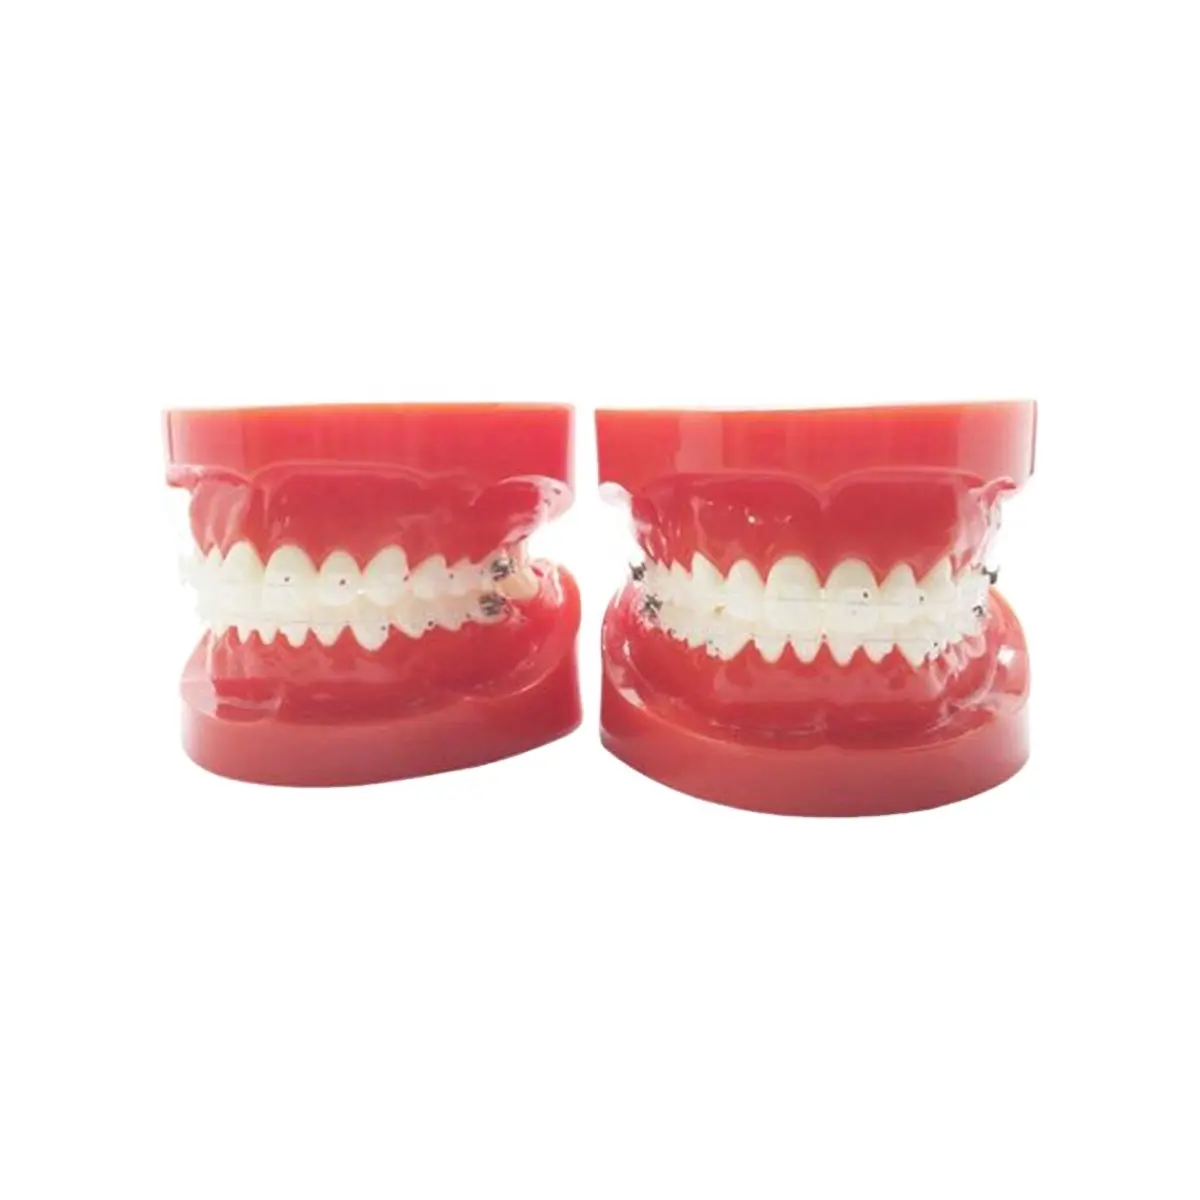 Modèle orthodontique dentaire Denxy avec support en céramique fil de couleur de dent ligature claire cravate modèles ortho de couleur rouge ortho typodont